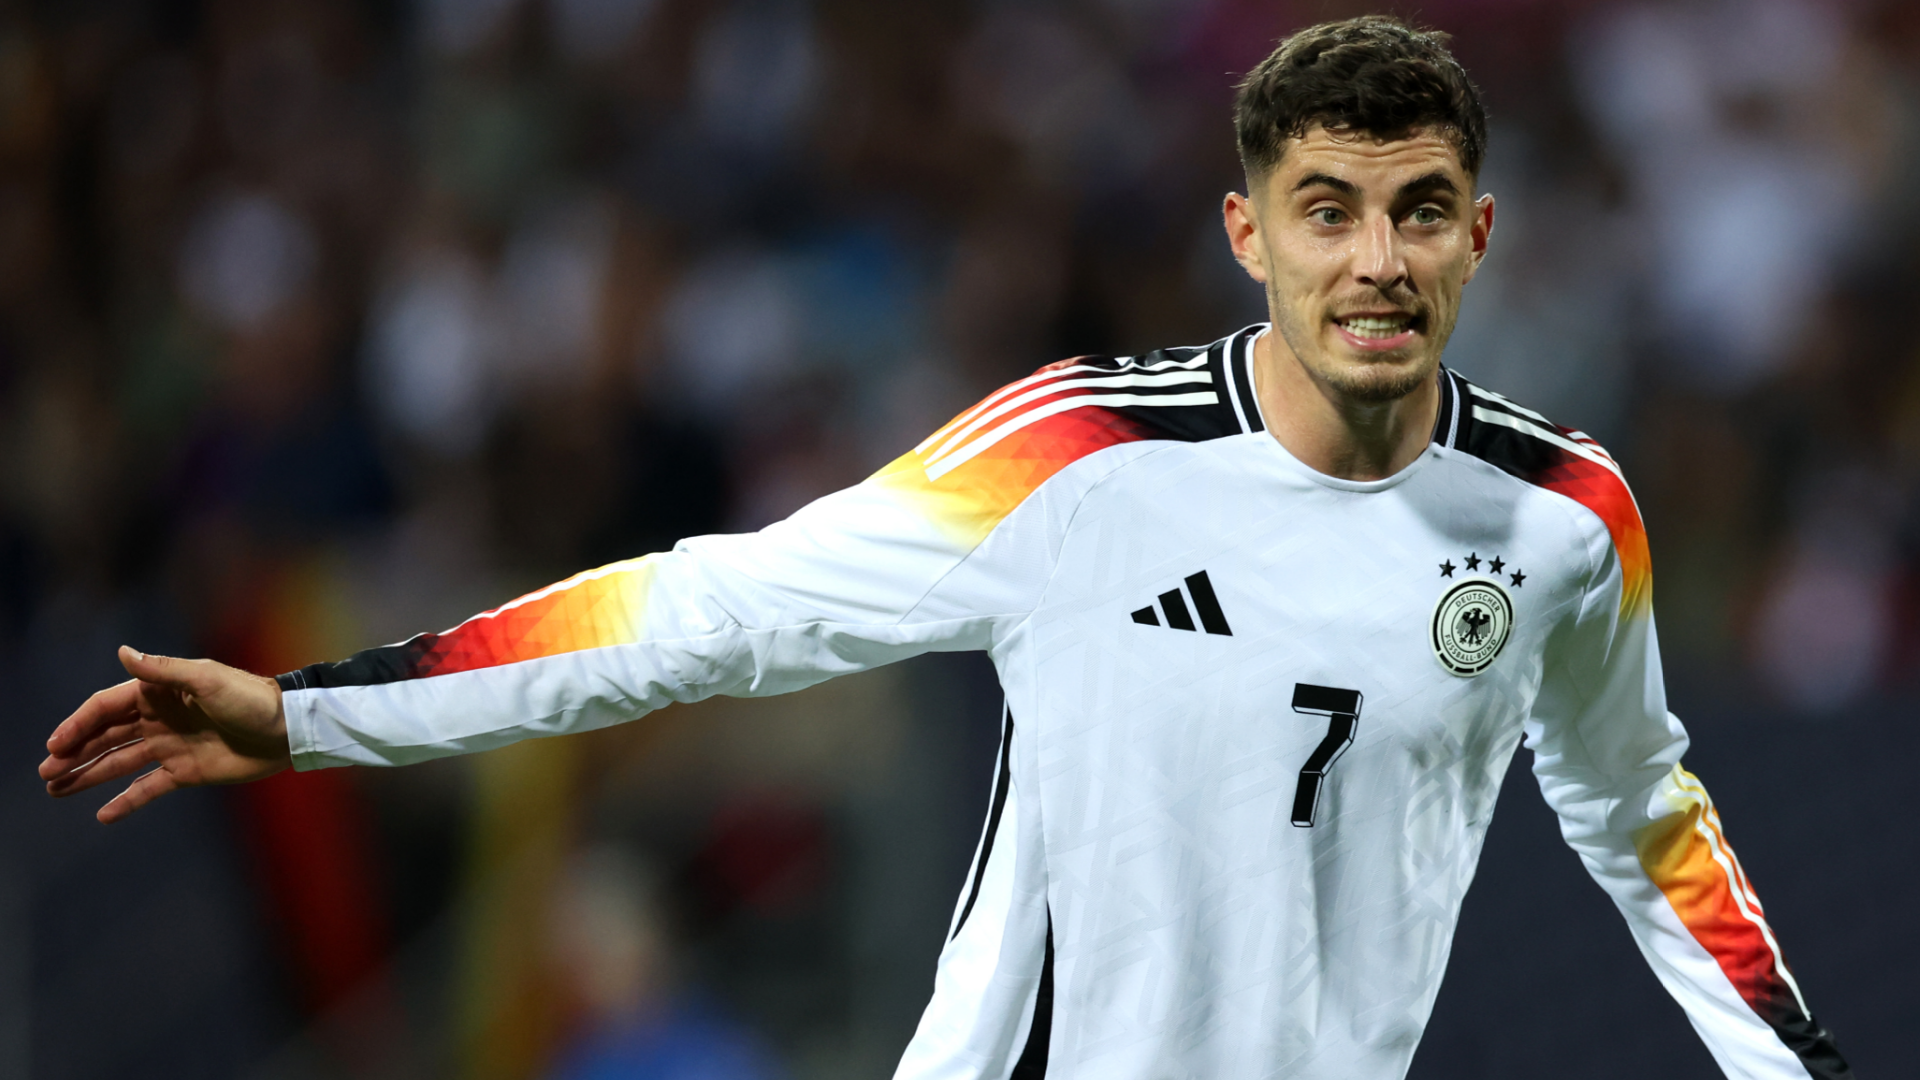 Deutschland vs. Griechenland im LIVE STREAM und im Free TV: DFB Testspiel heute live schauen | Goal.com Deutschland